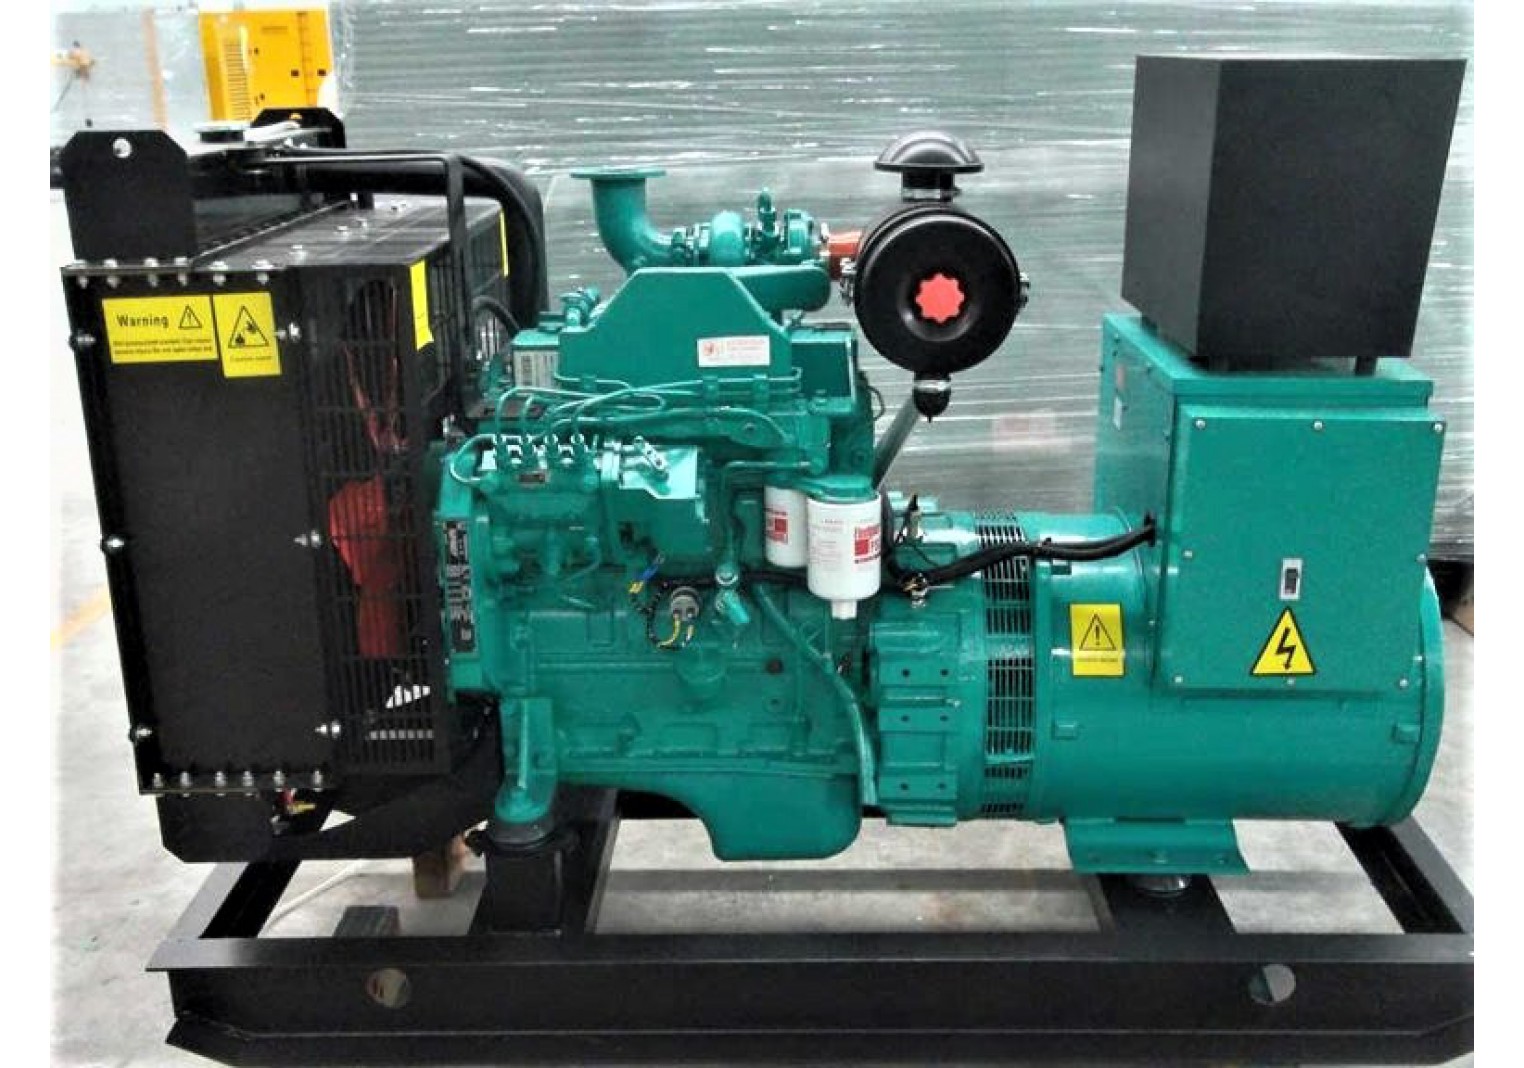 Diesel Generator Set Engine 4BTA3.9-G11